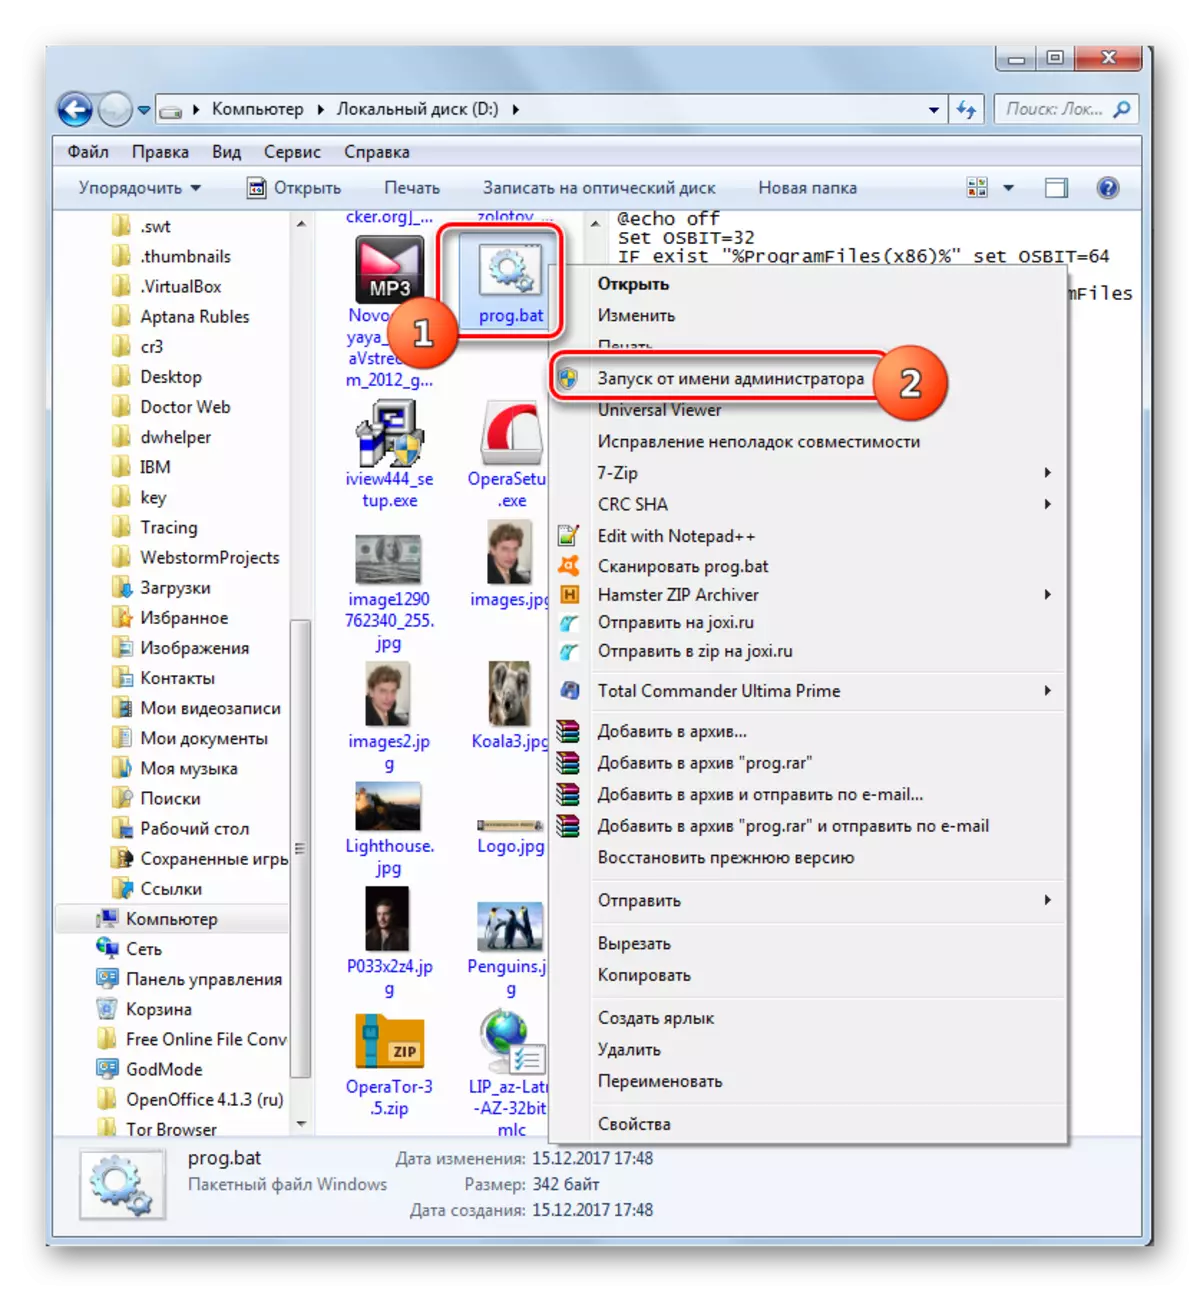 Memulai skrip atas nama administrator melalui menu konteks di Explorer di Windows 7